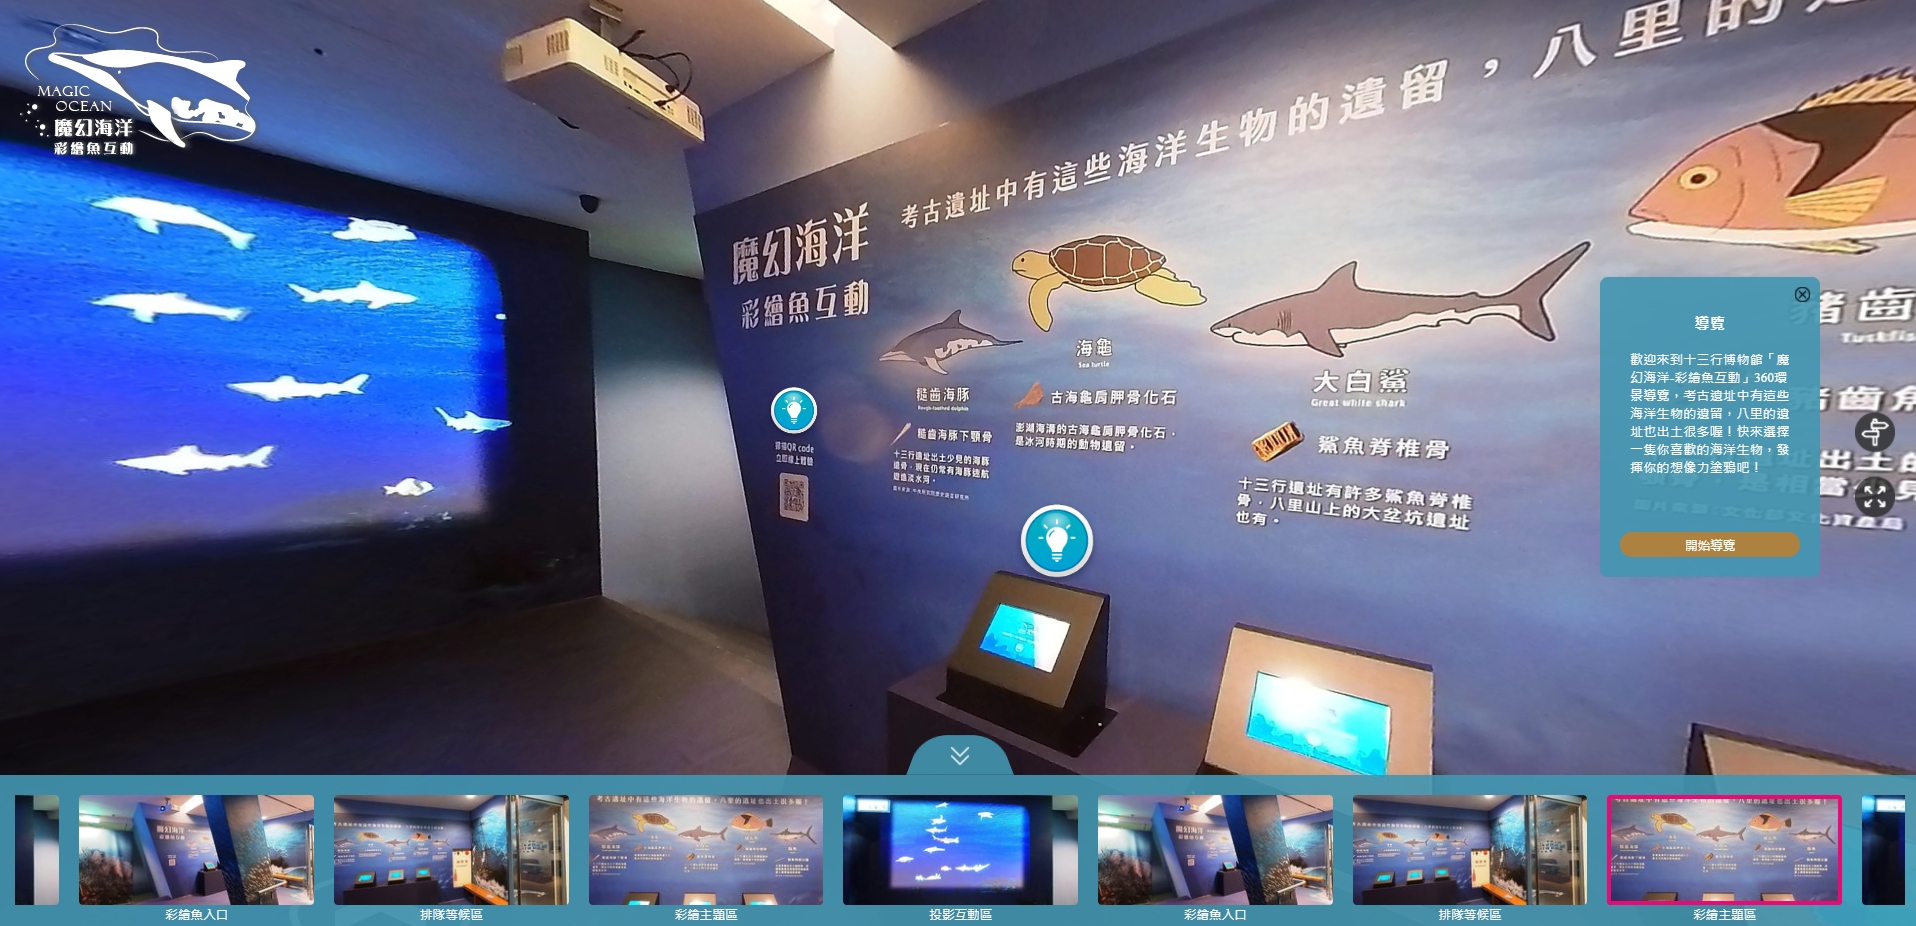 新北市立十三行博物館 「魔幻海洋-彩繪魚互動」360語音環景導覽」